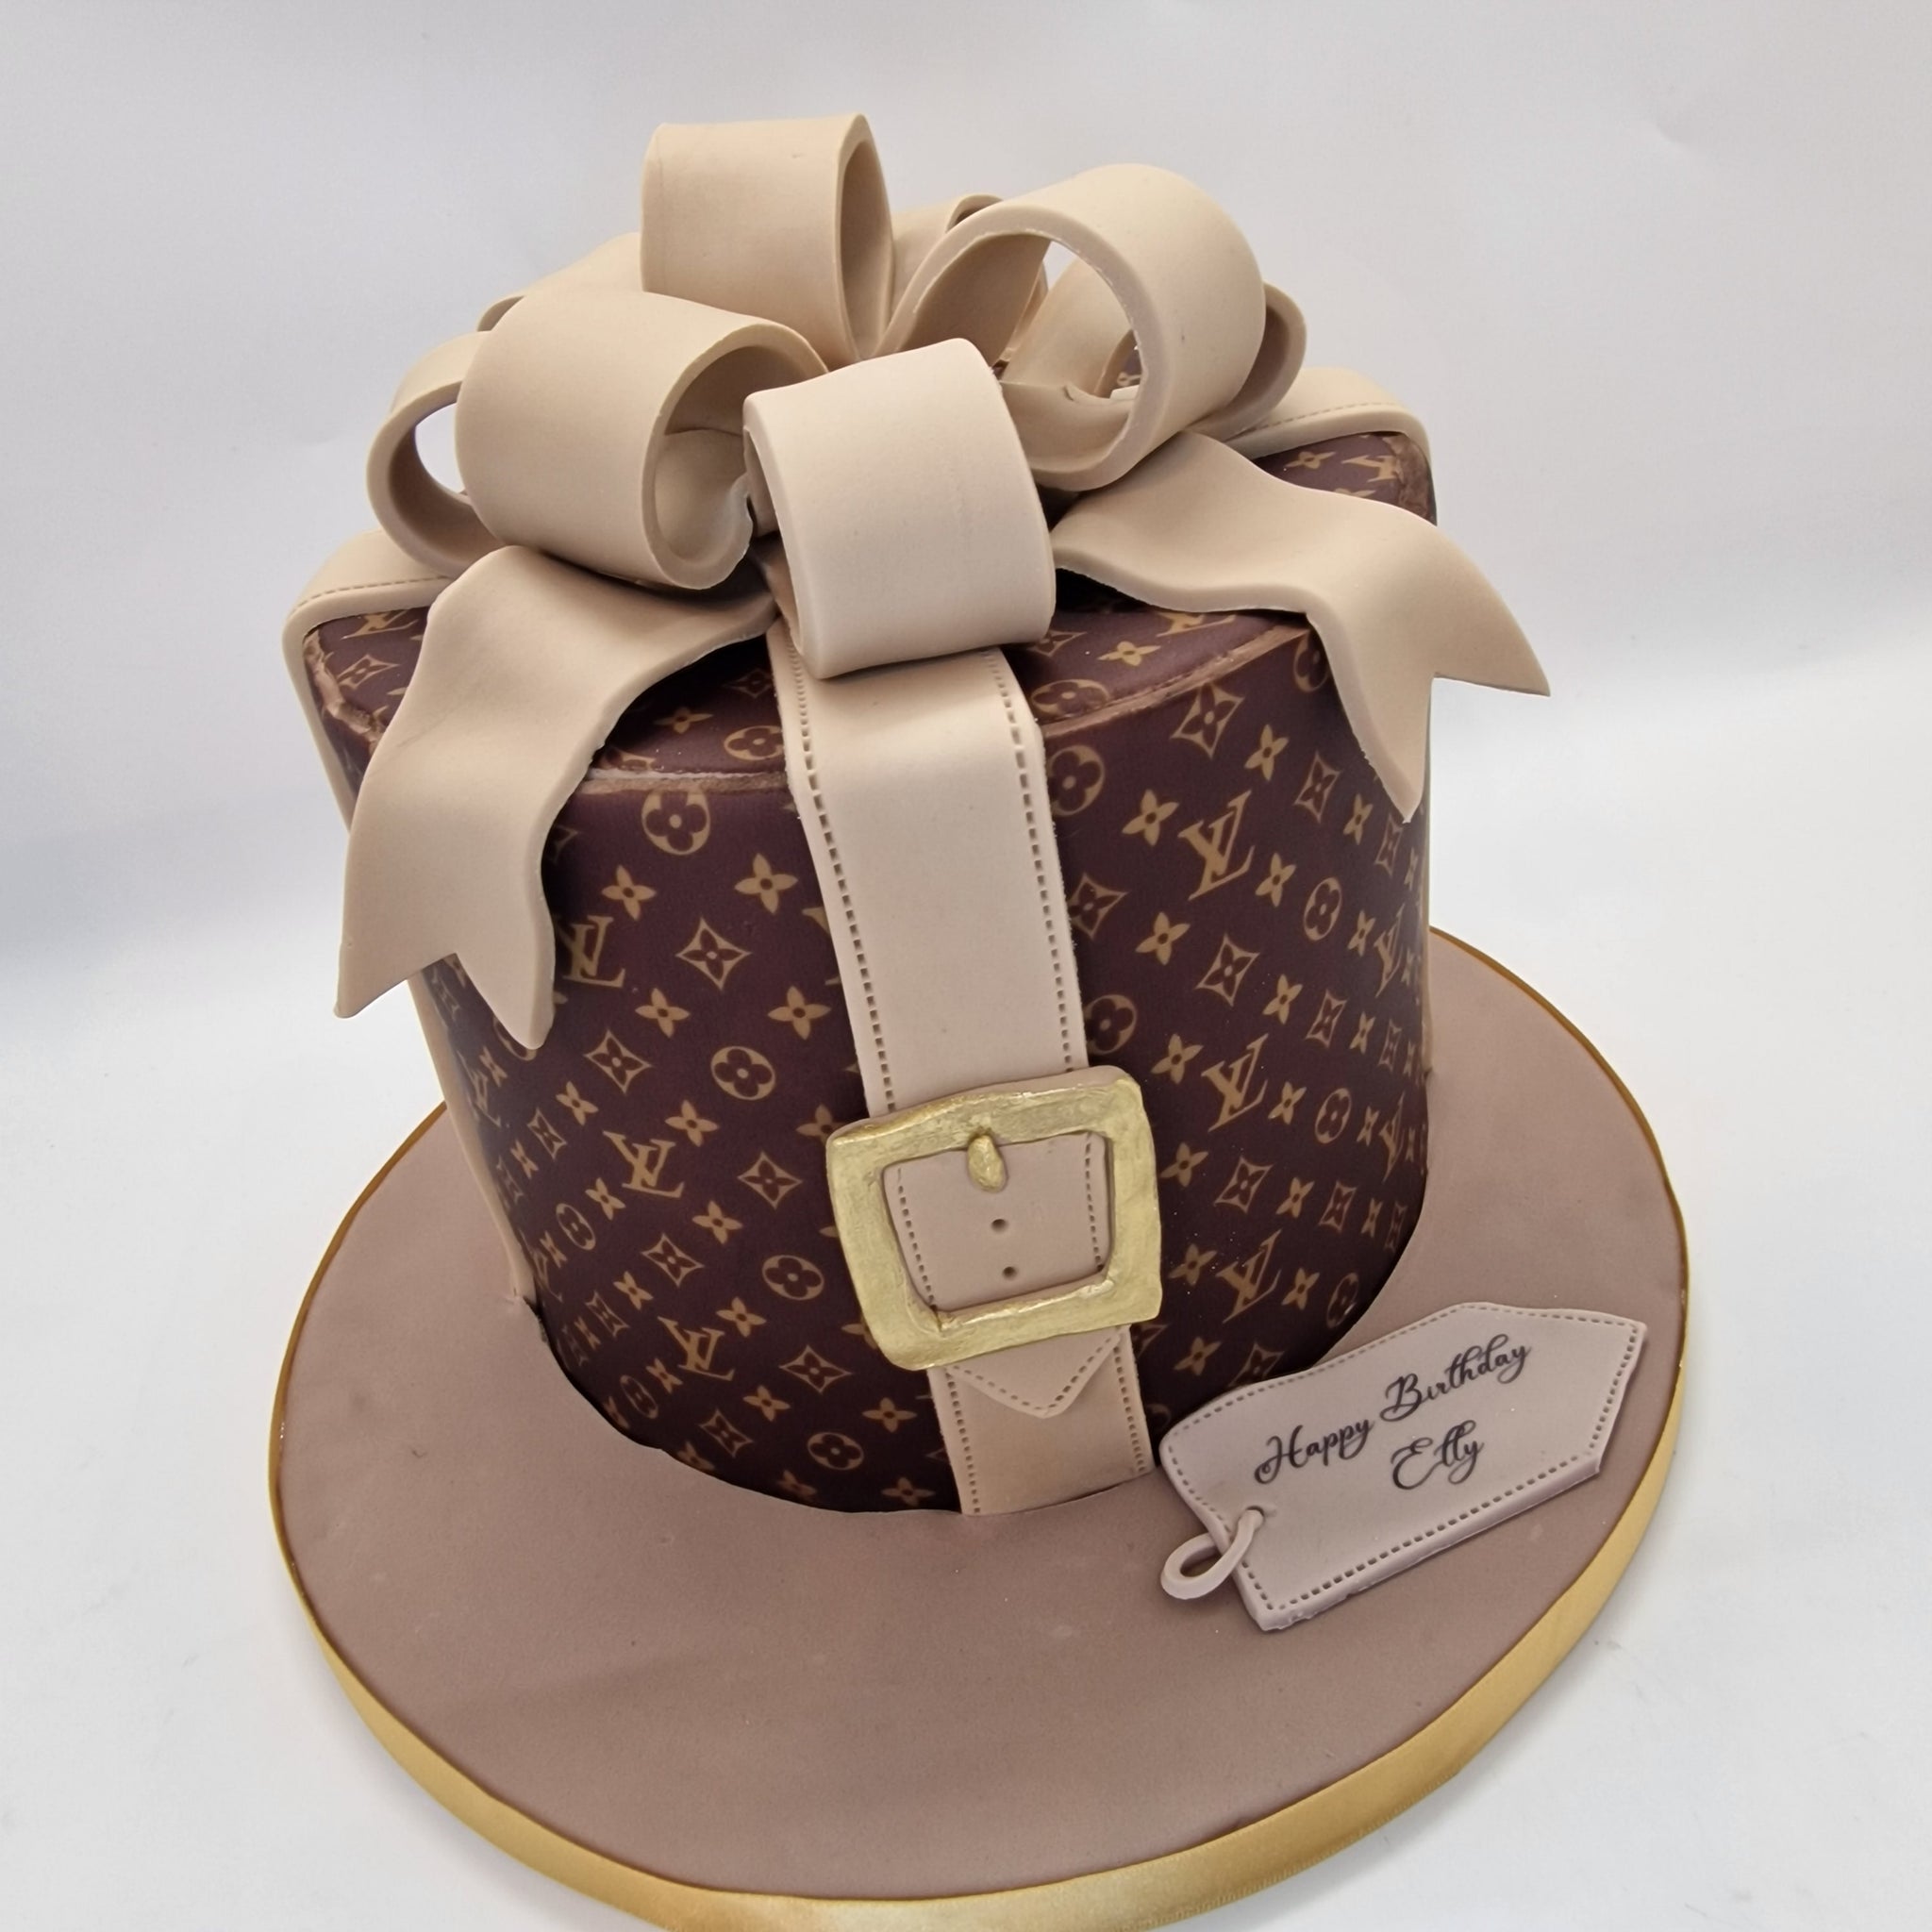 Luis Vuitton cake  Custom birthday cakes, Louis vuitton cake, Cute  birthday cakes